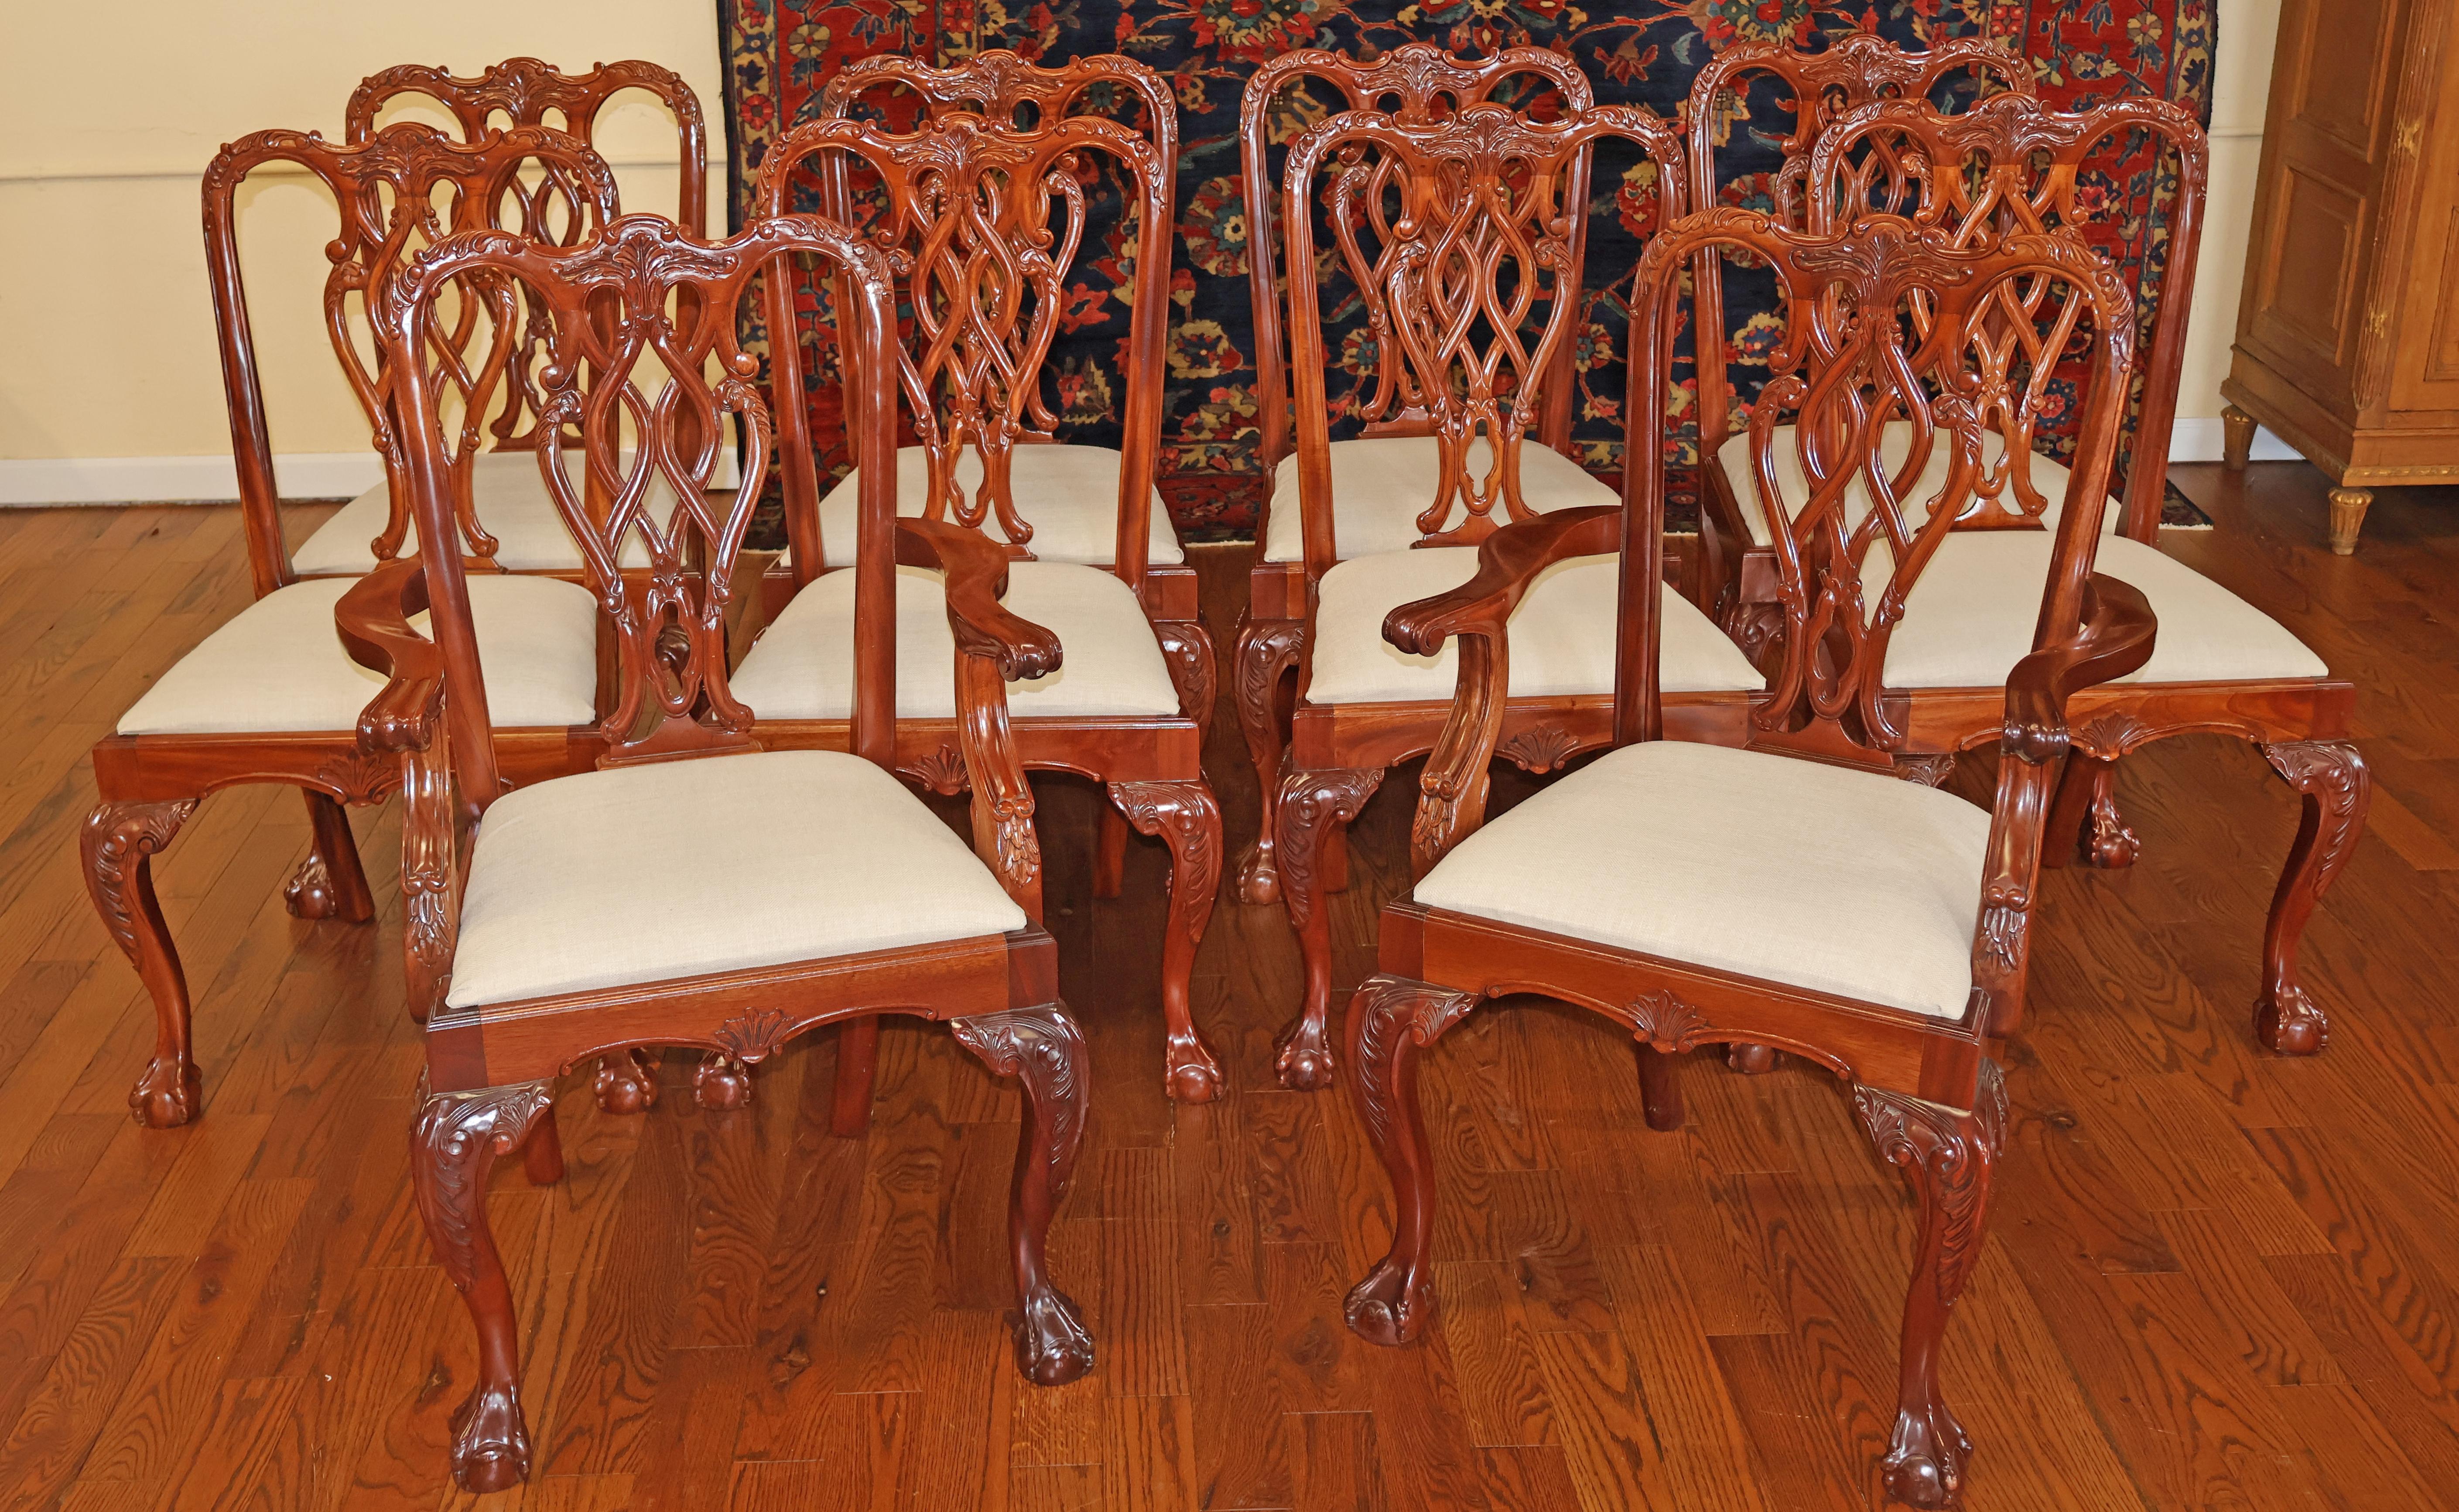 Ensemble de 10 chaises de salle à manger en acajou de style Chippendale avec pieds en boule et griffes

Dimensions : Fauteuils - 40